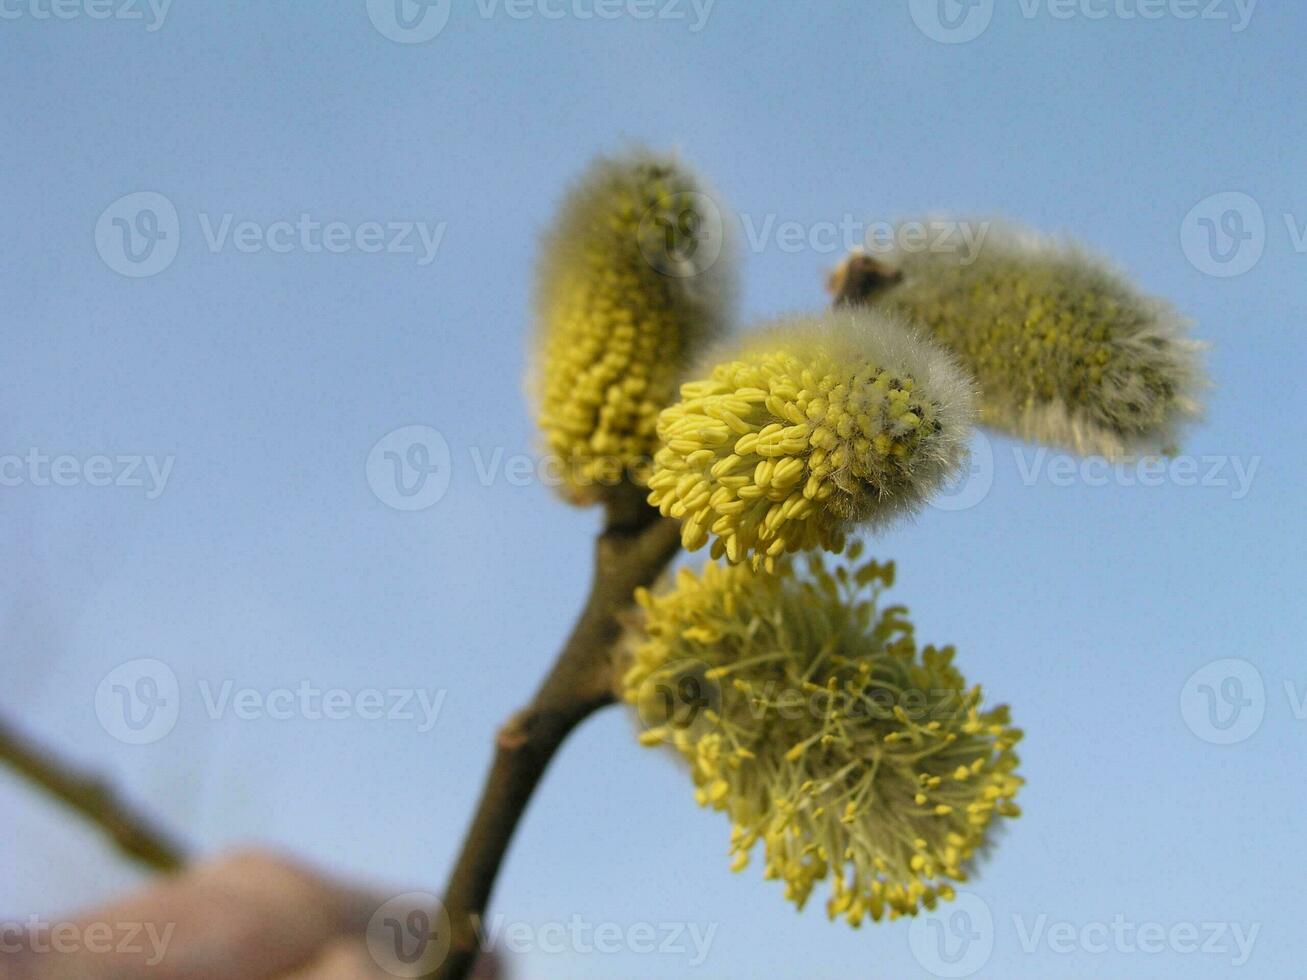 ne pas duveteux épanouissement inflorescences chatons houx saule dans de bonne heure printemps avant le feuilles. mon chéri les plantes Ukraine. collecte pollen de fleurs. photo